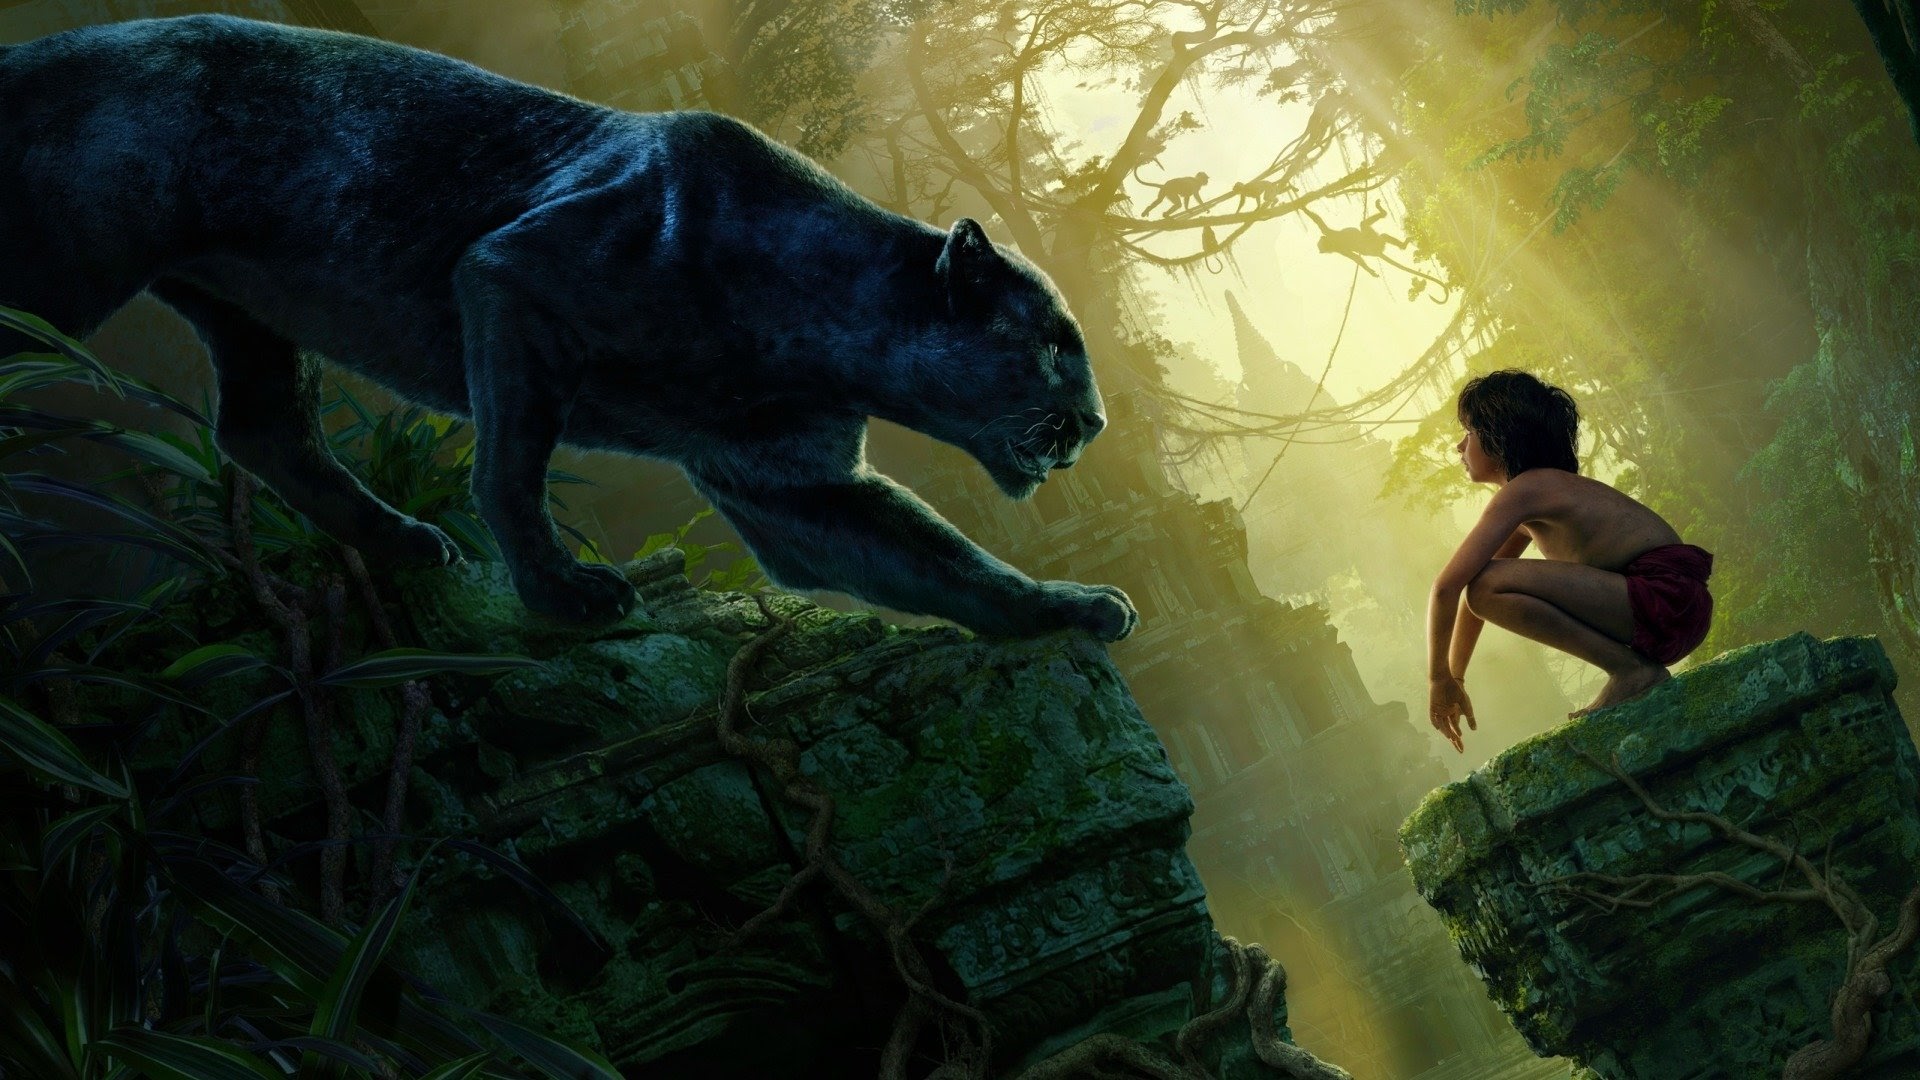 Μετά από 3 live-action τελικά η Disney το πέτυχε. Μια live-action ταινία που καταφέρνει να μεταφέρει την μαγεία της animation ταινίας του 1967. Σε αντίθεση με τις δύο προηγούμενες προσπάθειες, η Disney επέλεξε να δημιουργήσει το The Jungle Book εξ' ολοκλήρου σε στούντιο και όχι σε κάποια τοποθεσία στην ζούγκλα.